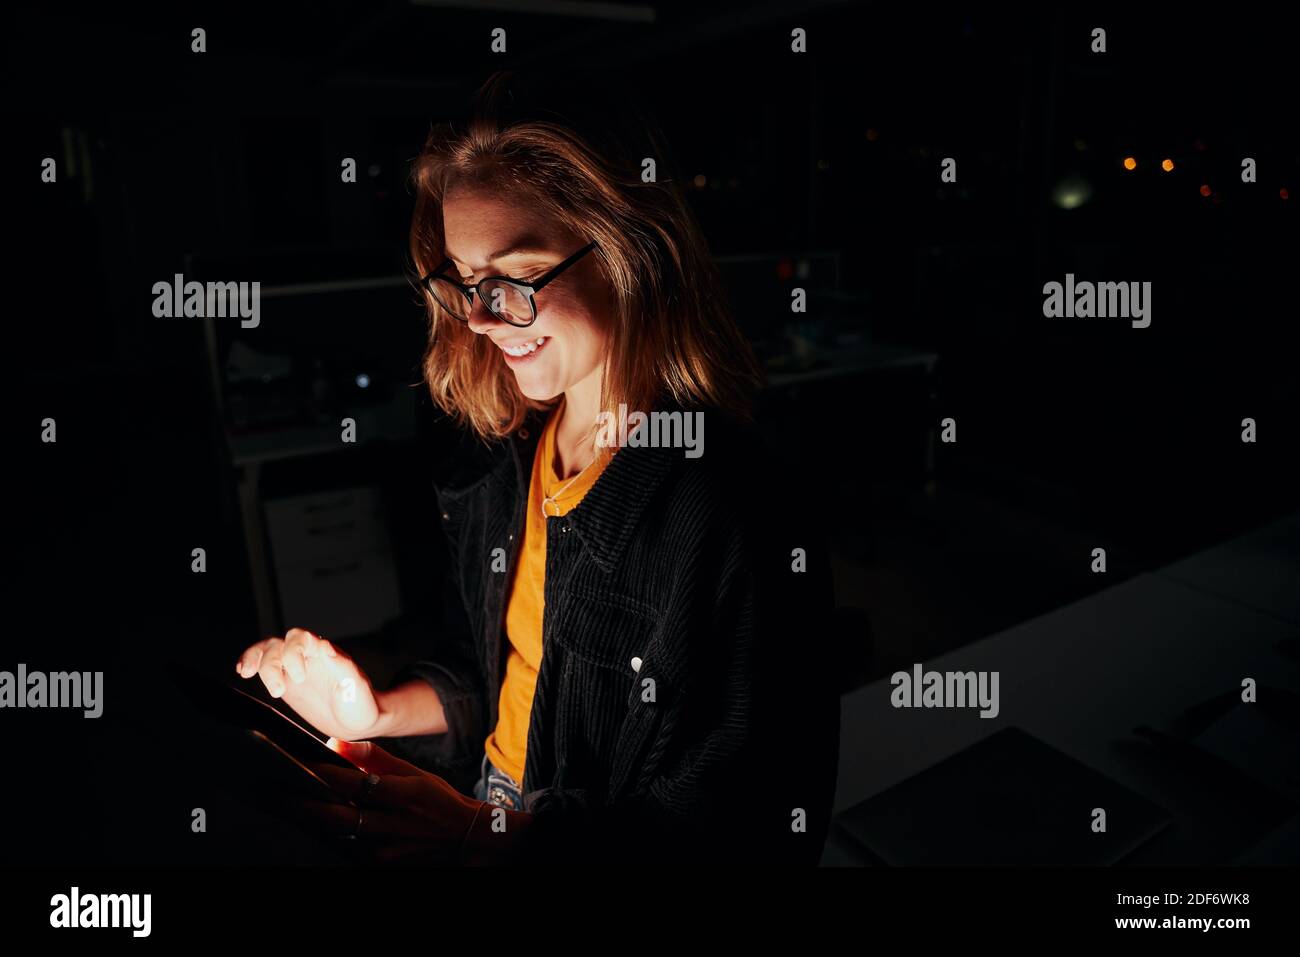 Portrait d'une femme cadre heureuse debout près du bureau utilisation d'une tablette numérique dans une salle de bureau sombre Banque D'Images